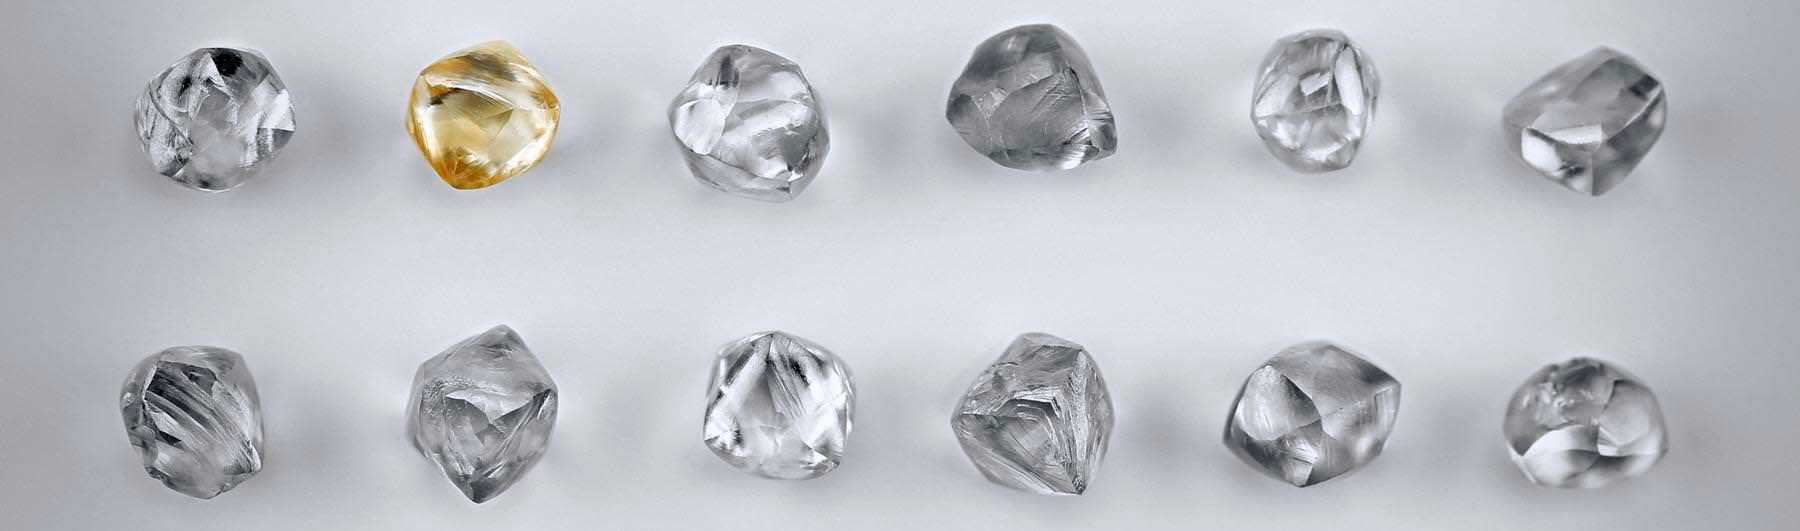 Các thông tin chung có trong giấy chứng nhận kim cương